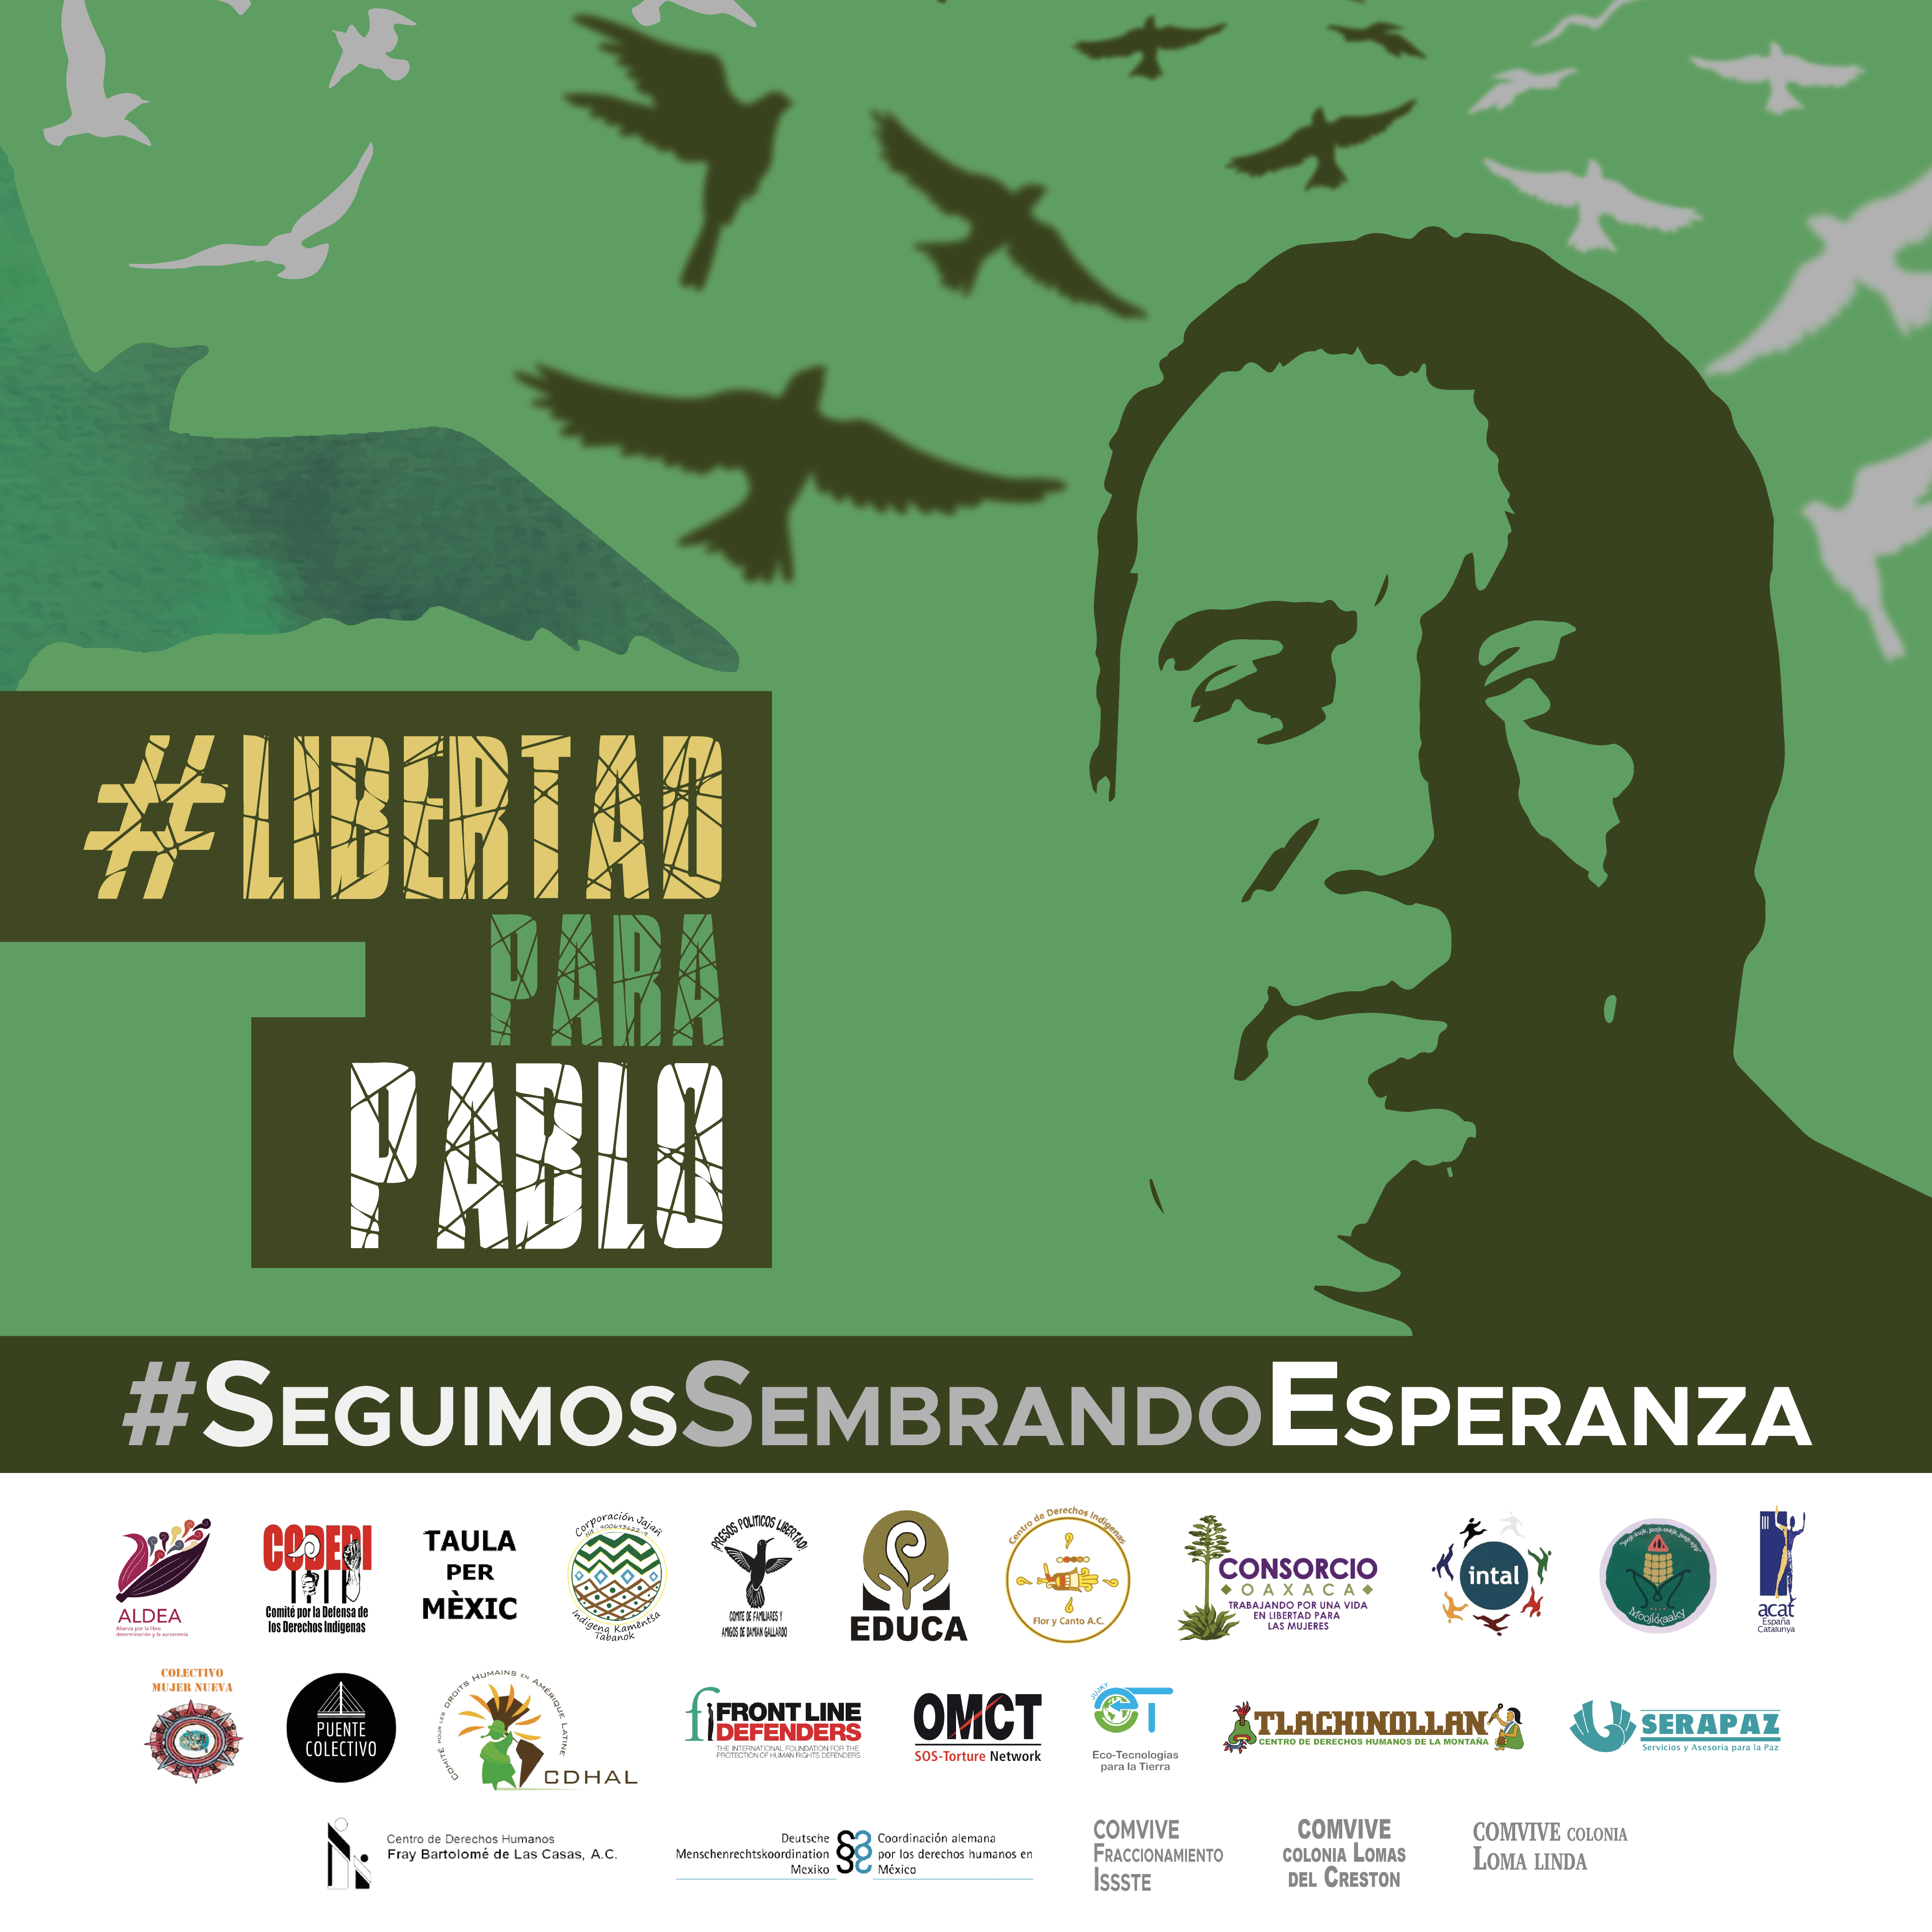 Culmina Jornada Internacional “Exigimos libertad para Pablo- Seguimos sembrando esperanza” tras tres semanas de acciones por la Libertad de Pablo López en 10 países￼